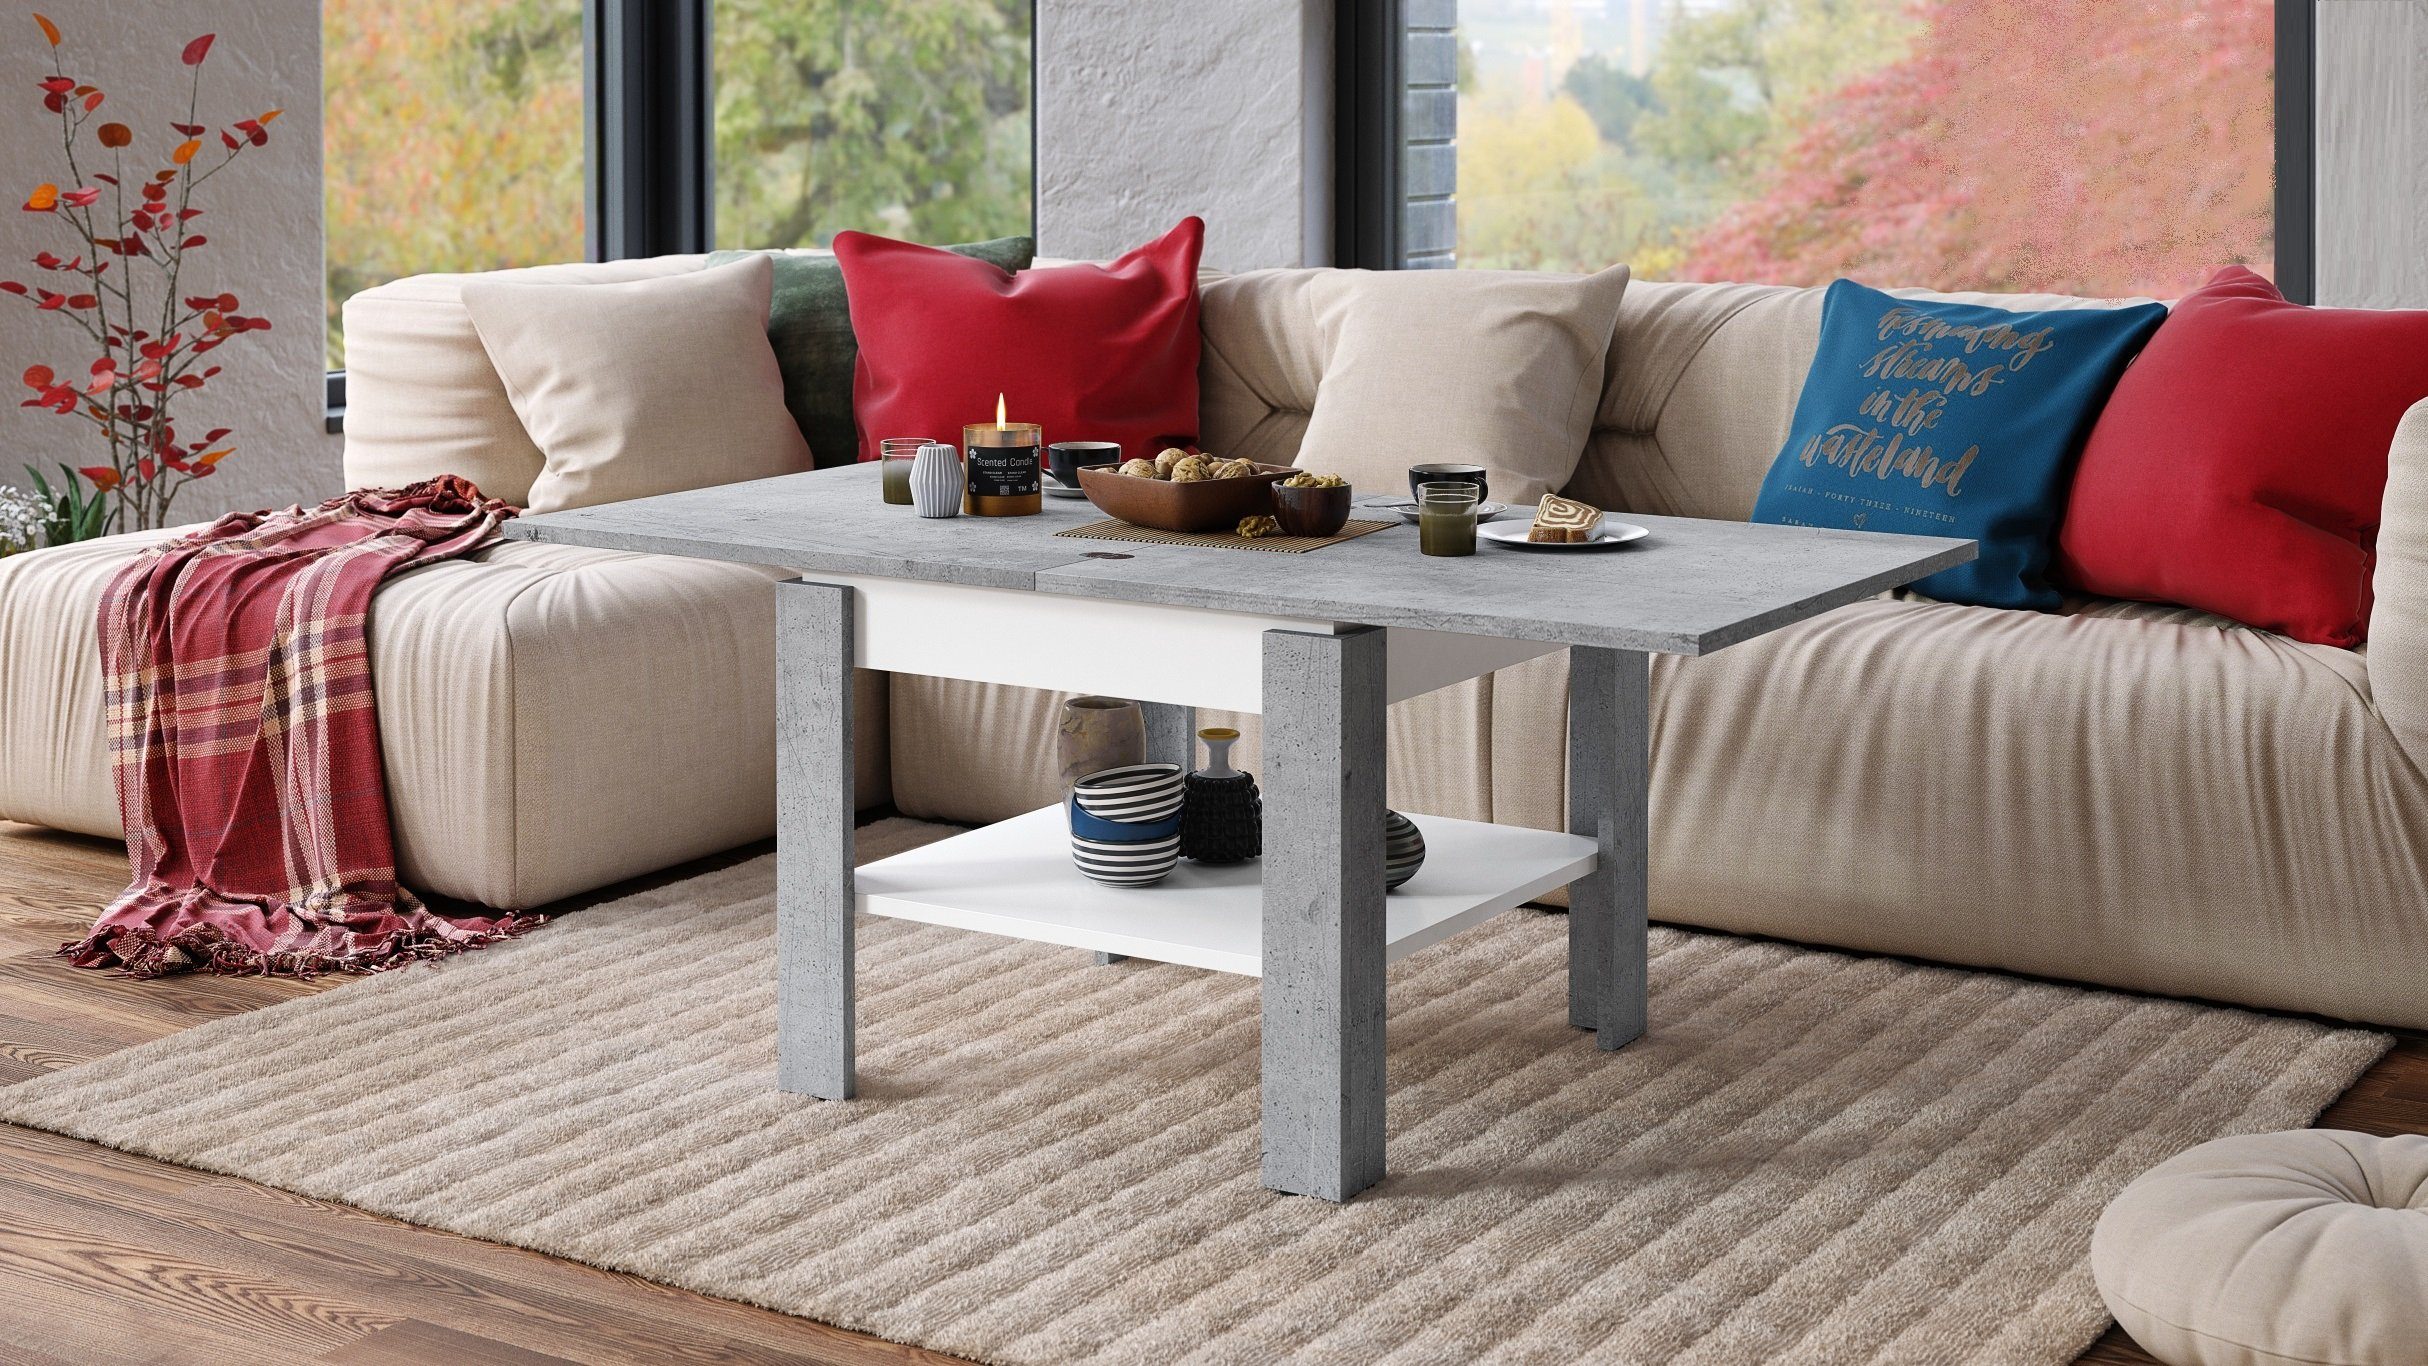 - Beton matt / Mazzoni 130cm Couchtisch Weiß Tisch matt Esstisch Leo 65 Weiß - Design aufklappbar Beton